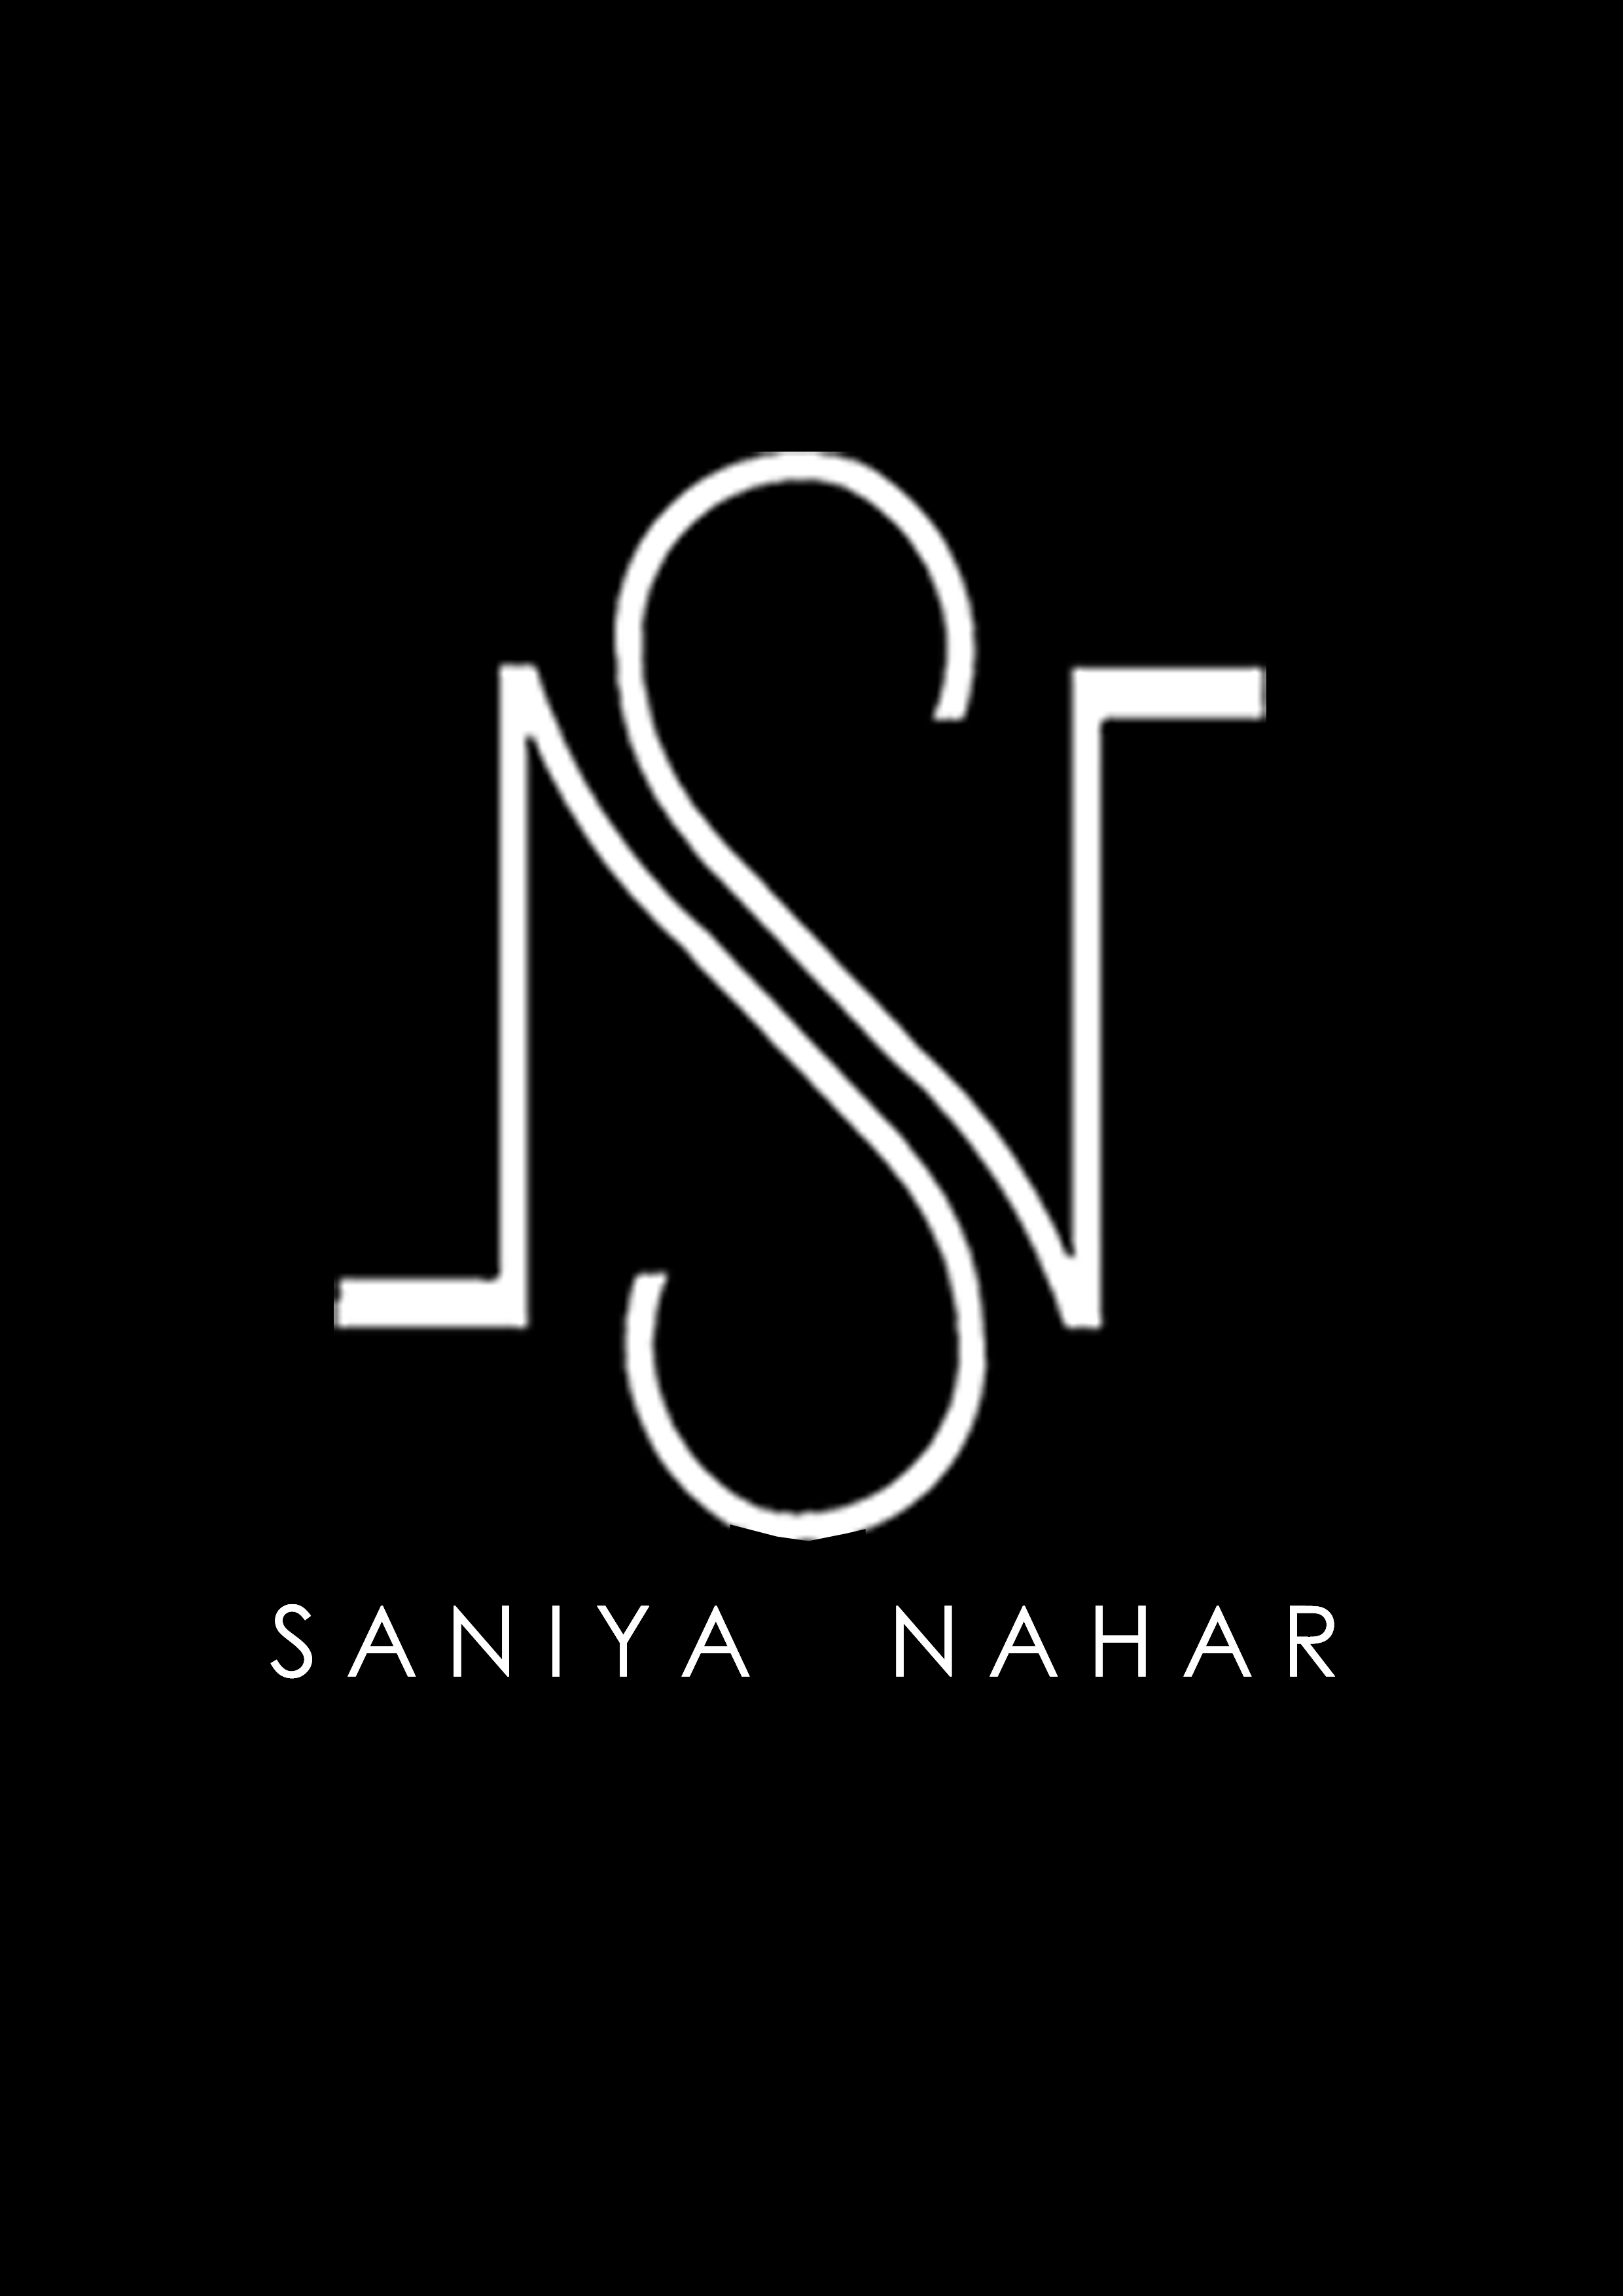 Saniya Nahar Designs